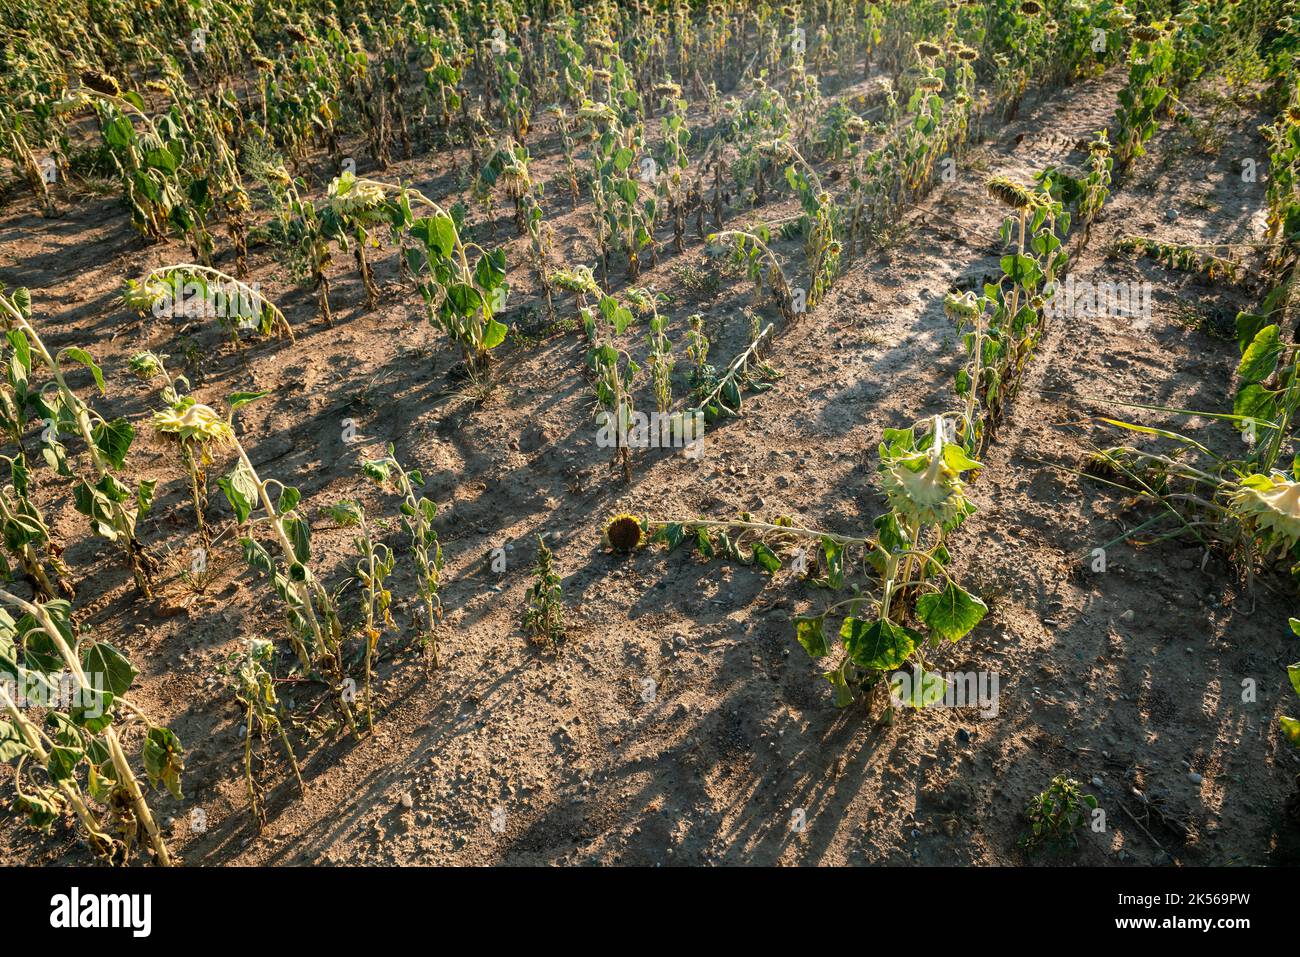 Trockene und trockene Sonnenblumenfelder haben aufgrund der Klimakrise und der Dürre in der gesamten landwirtschaftlichen Welt Probleme verursacht und Produktionskrisen geschaffen. Stockfoto